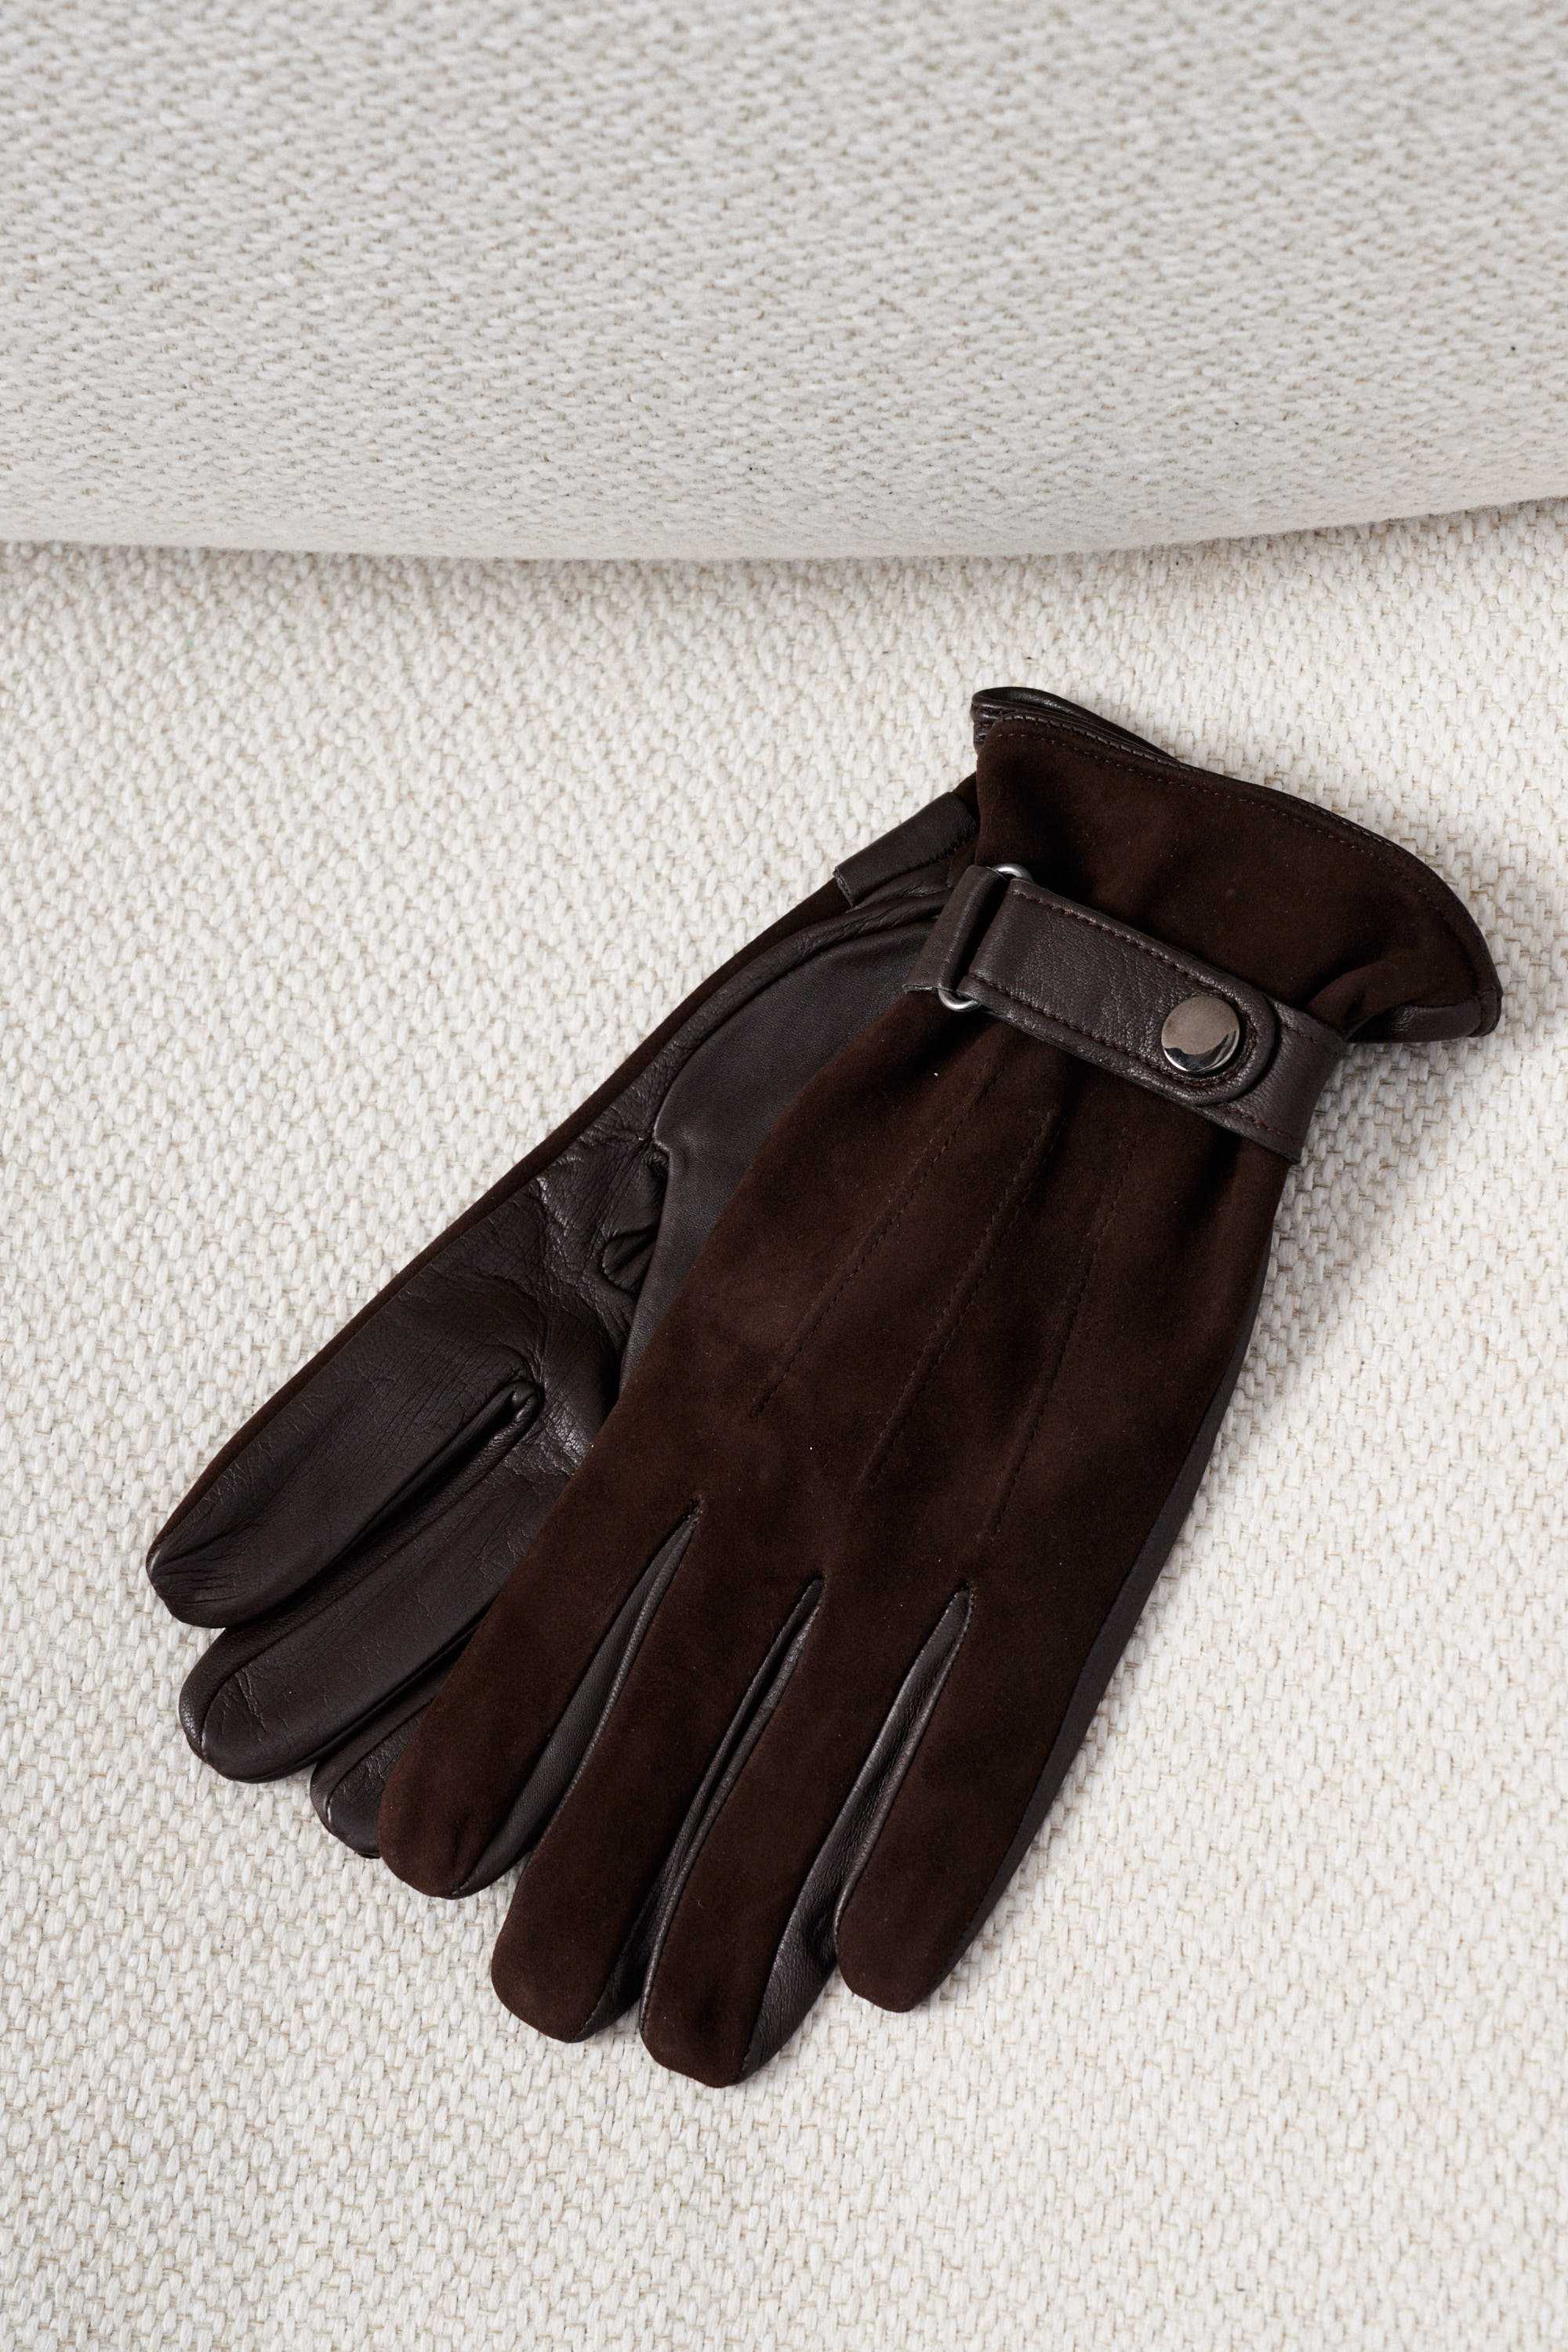 Перчатки мужские кожаные-замшевые, коричневые с застежкой